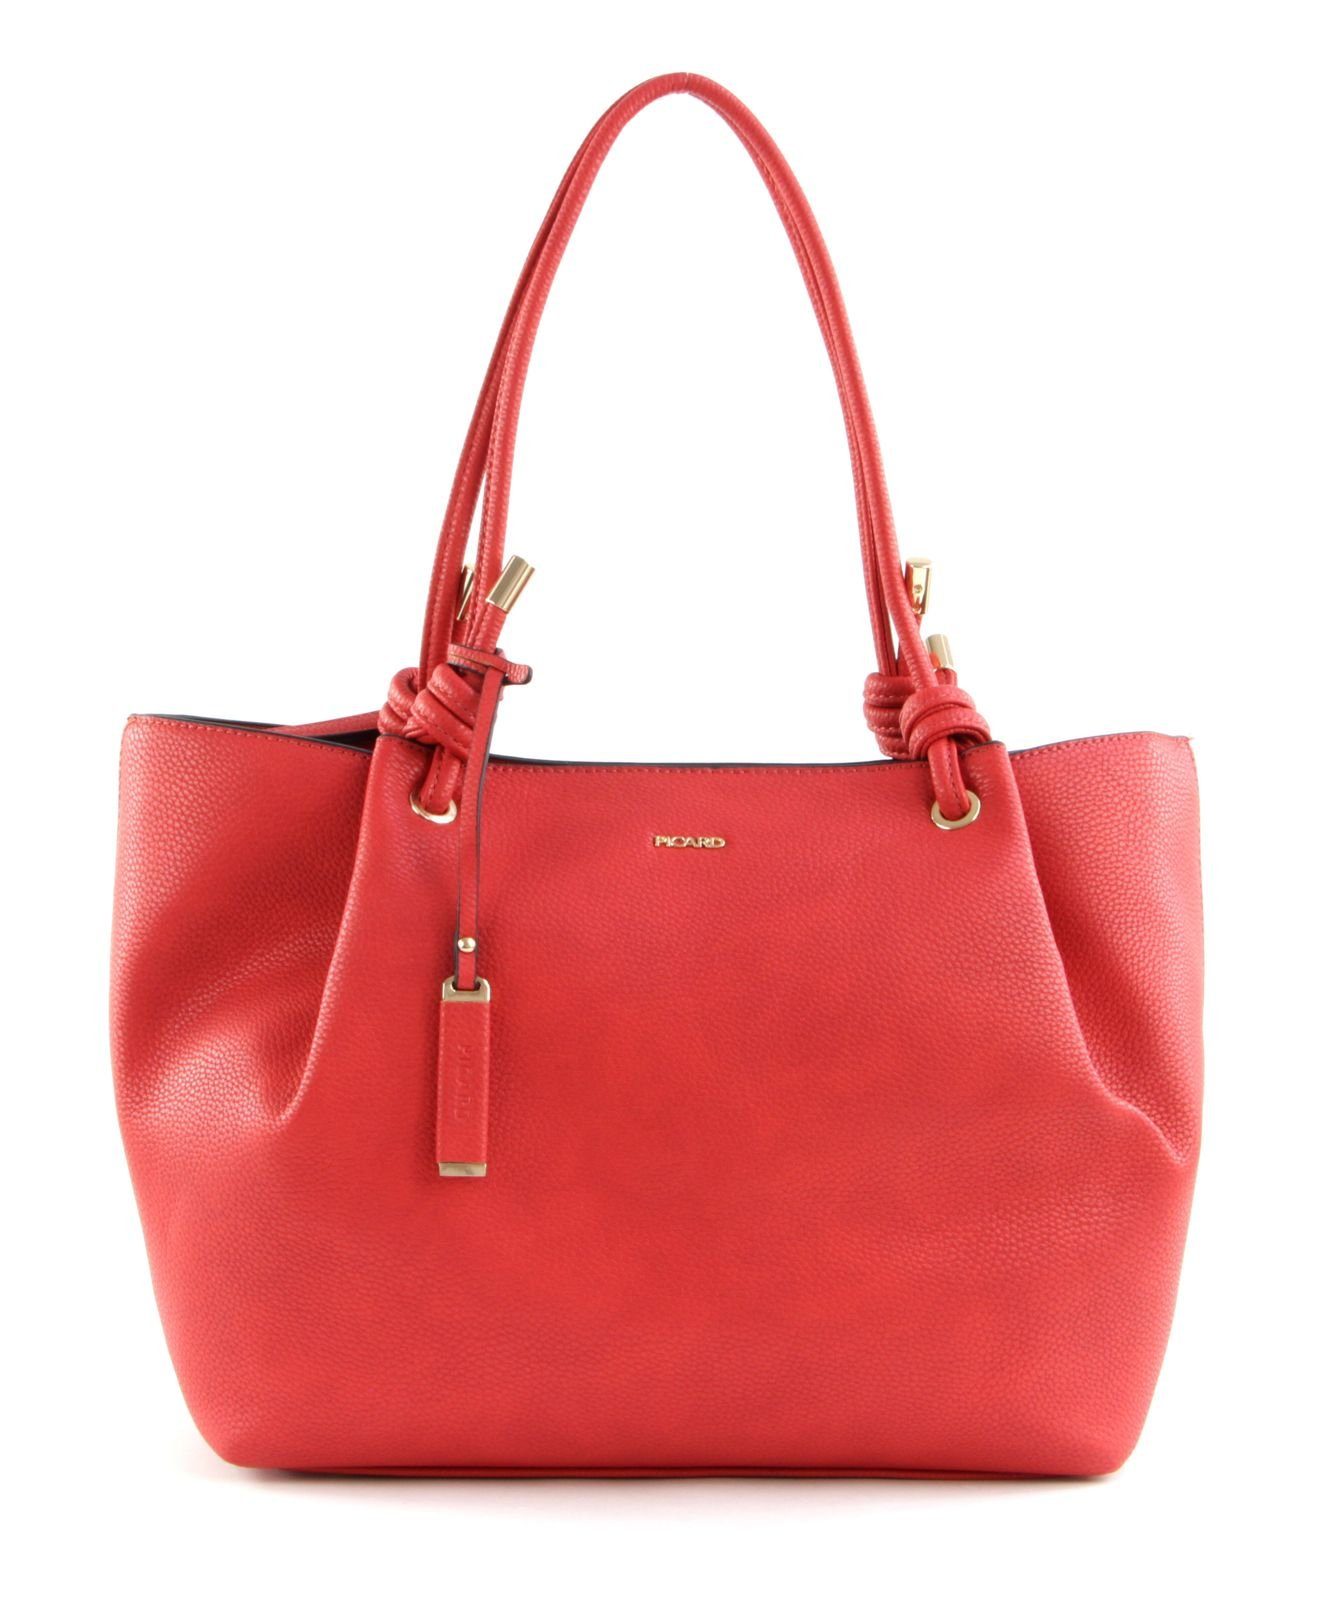 Picard Handtasche »Bari 3031«, Shopper kaufen | OTTO